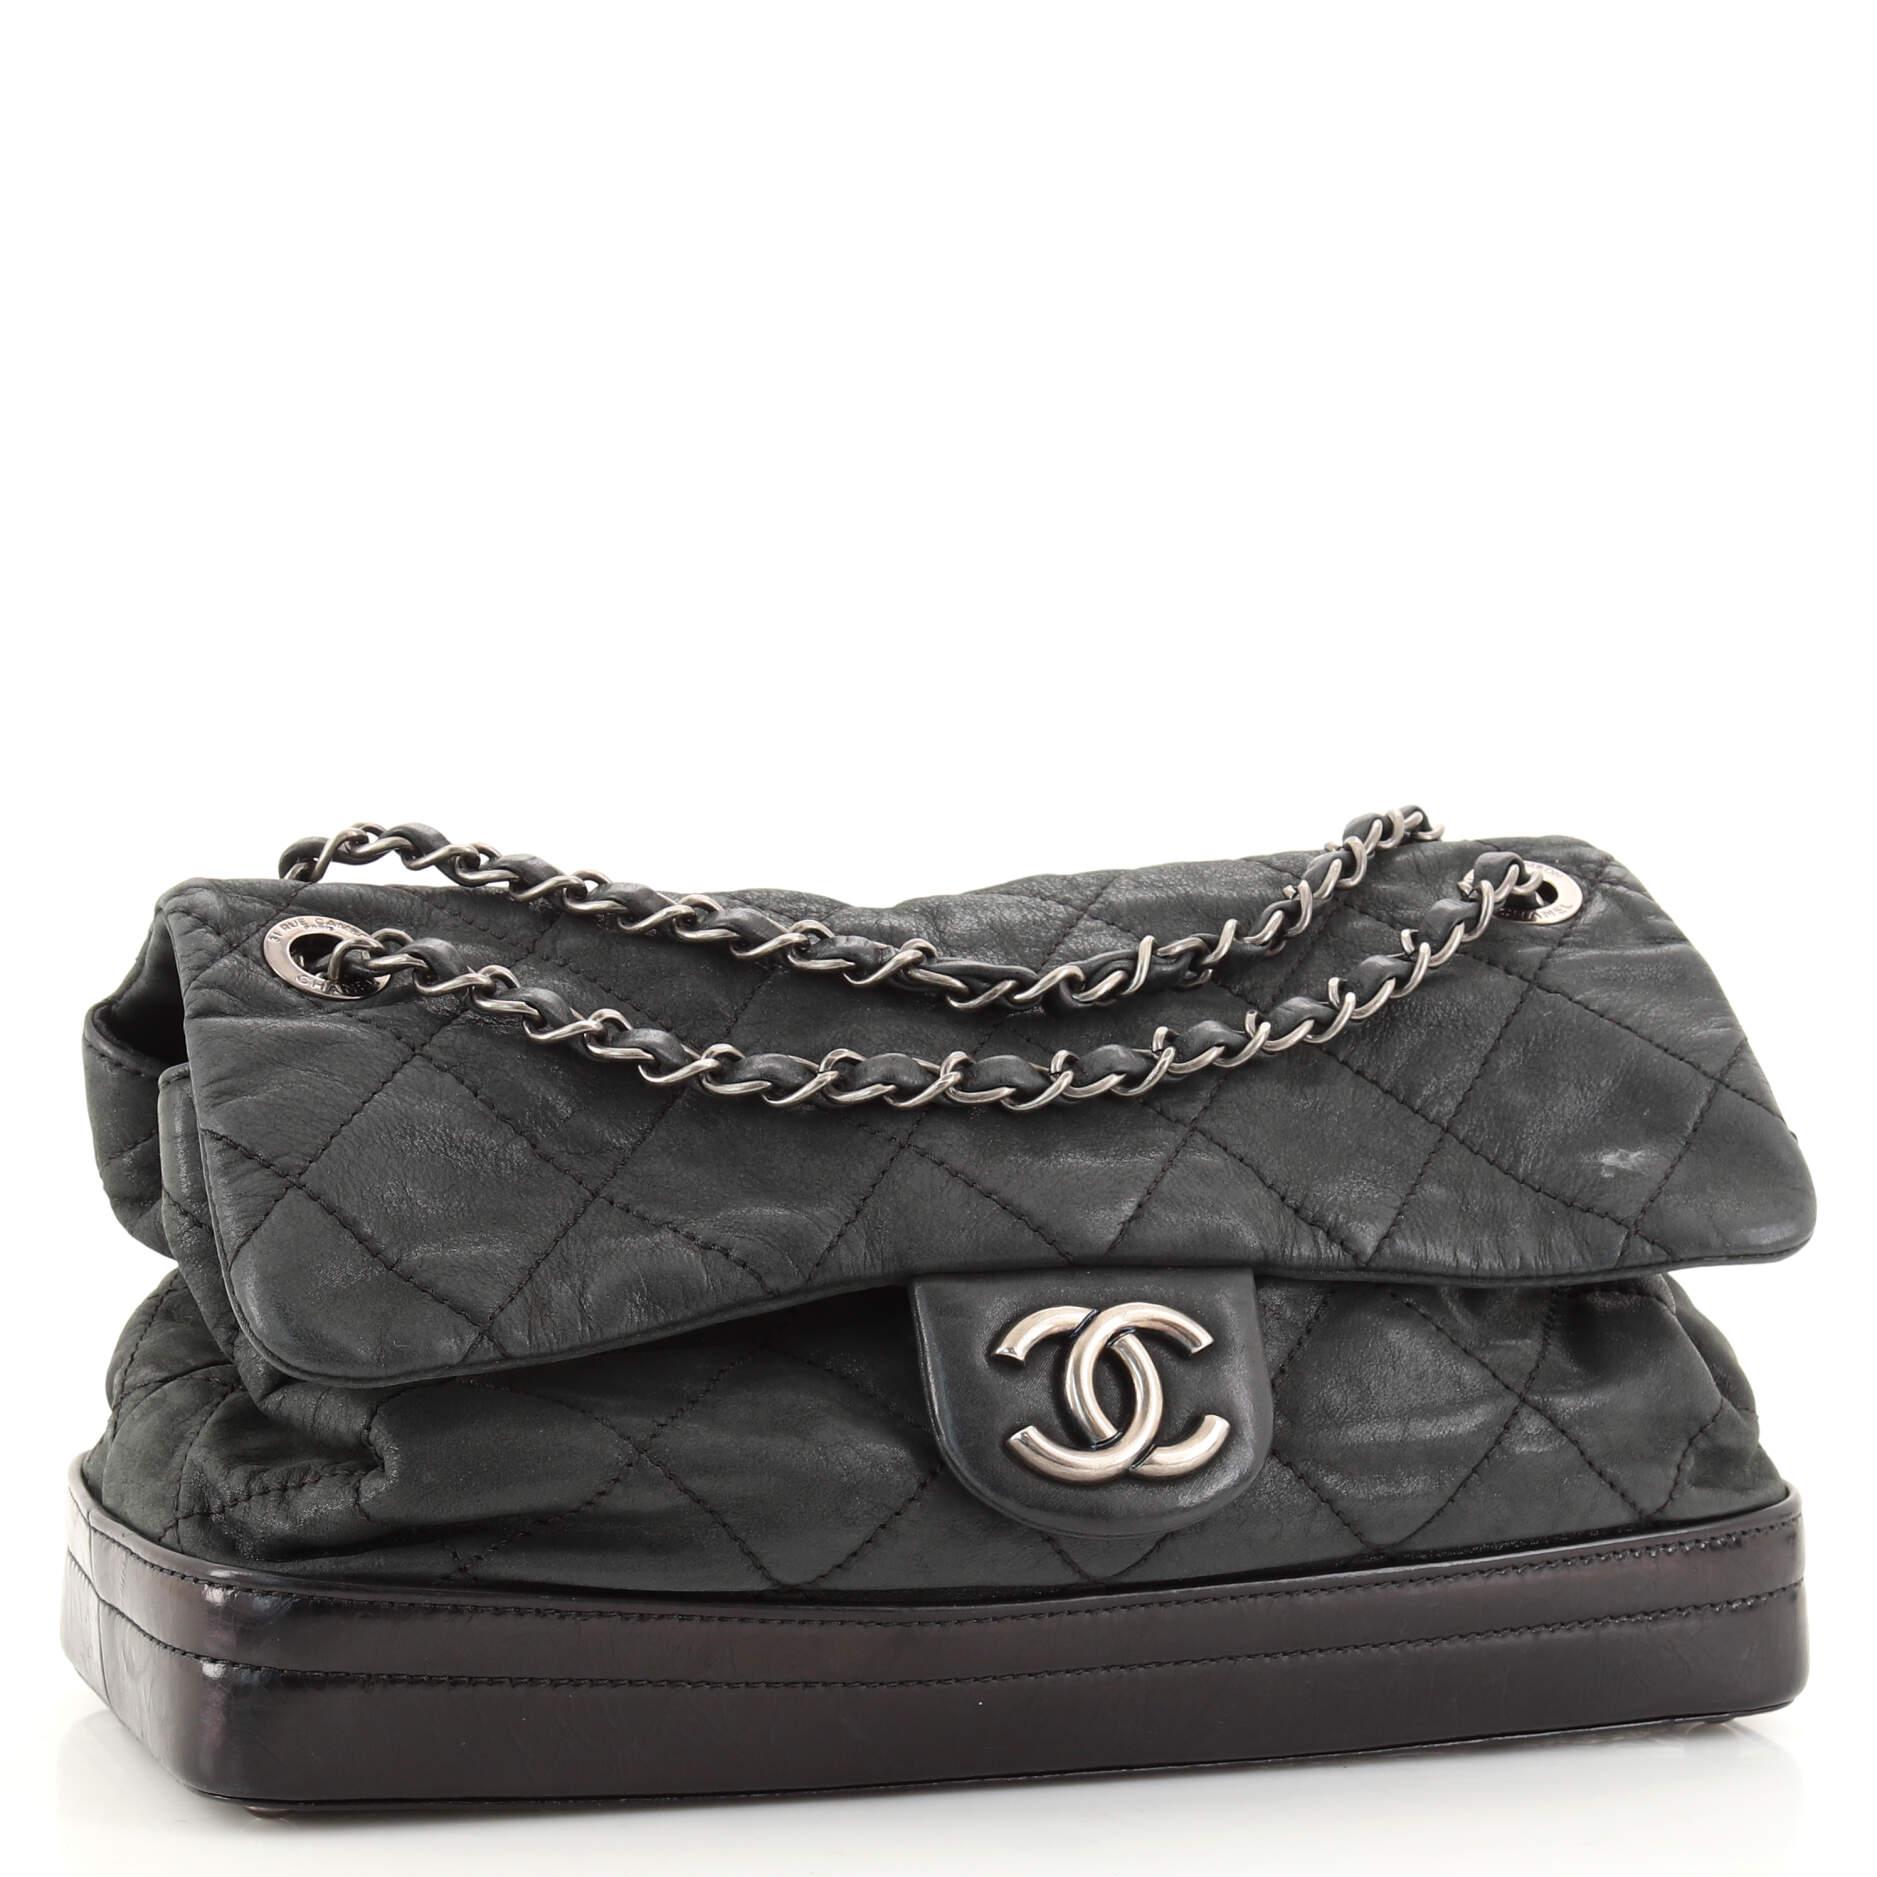 Chanel Vip Bag - 3 For Sale on 1stDibs | vip chanel bag price, chanel vip  shell bag, chanel vip gift